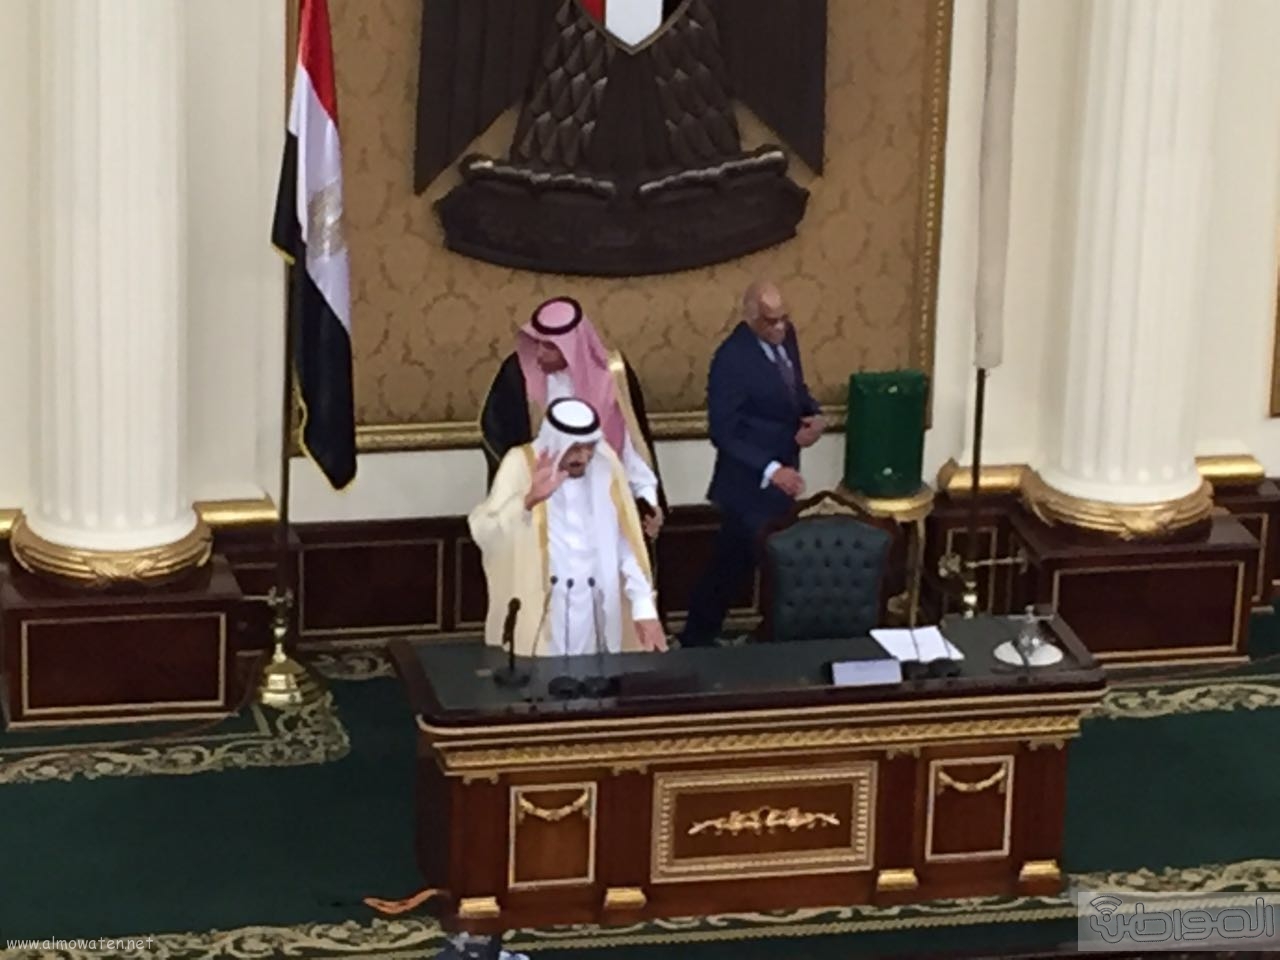 #سلمان_الحزم يقابل بعاصفة تصفيق وهتافات وقصائد ترحيبية بأول ملك سعودي يزور البرلمان المصري